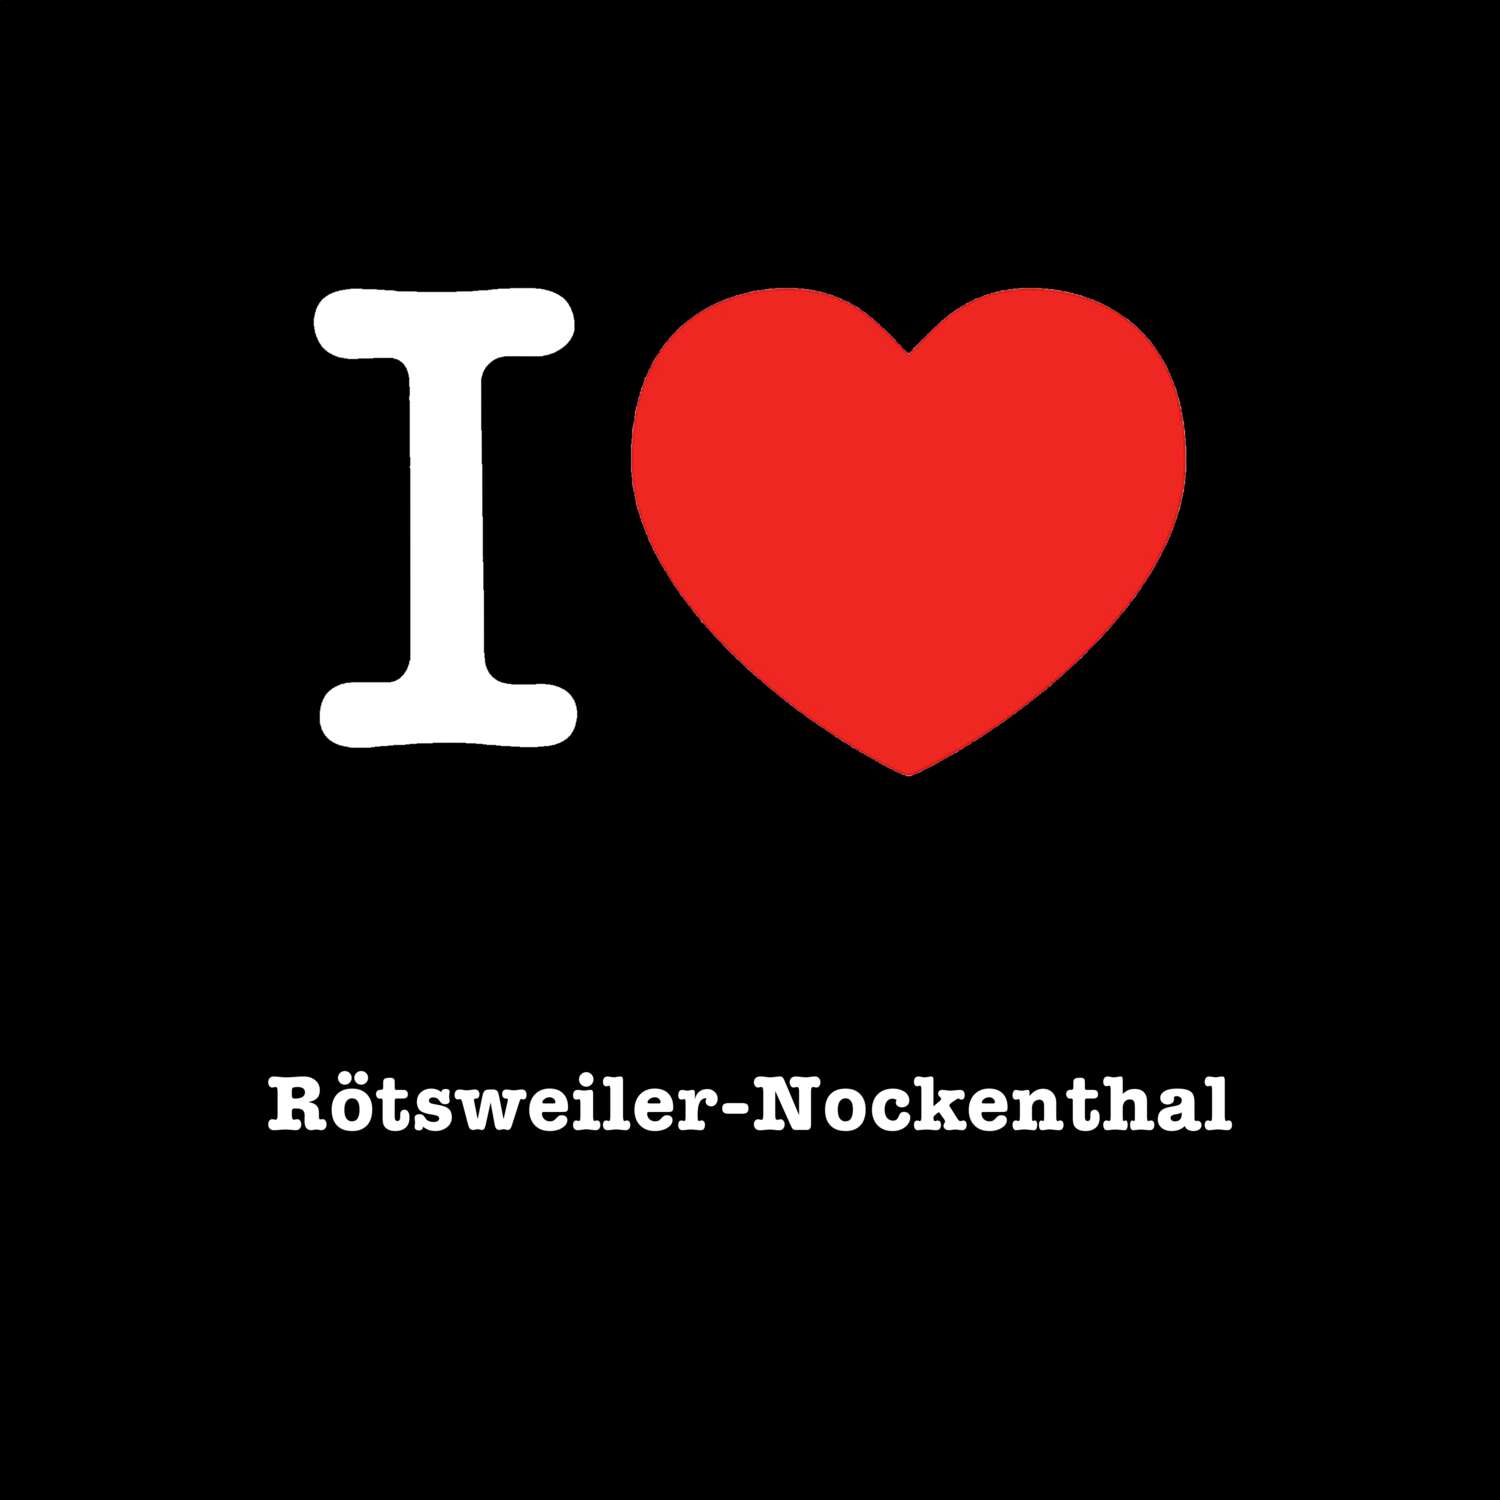 Rötsweiler-Nockenthal T-Shirt »I love«